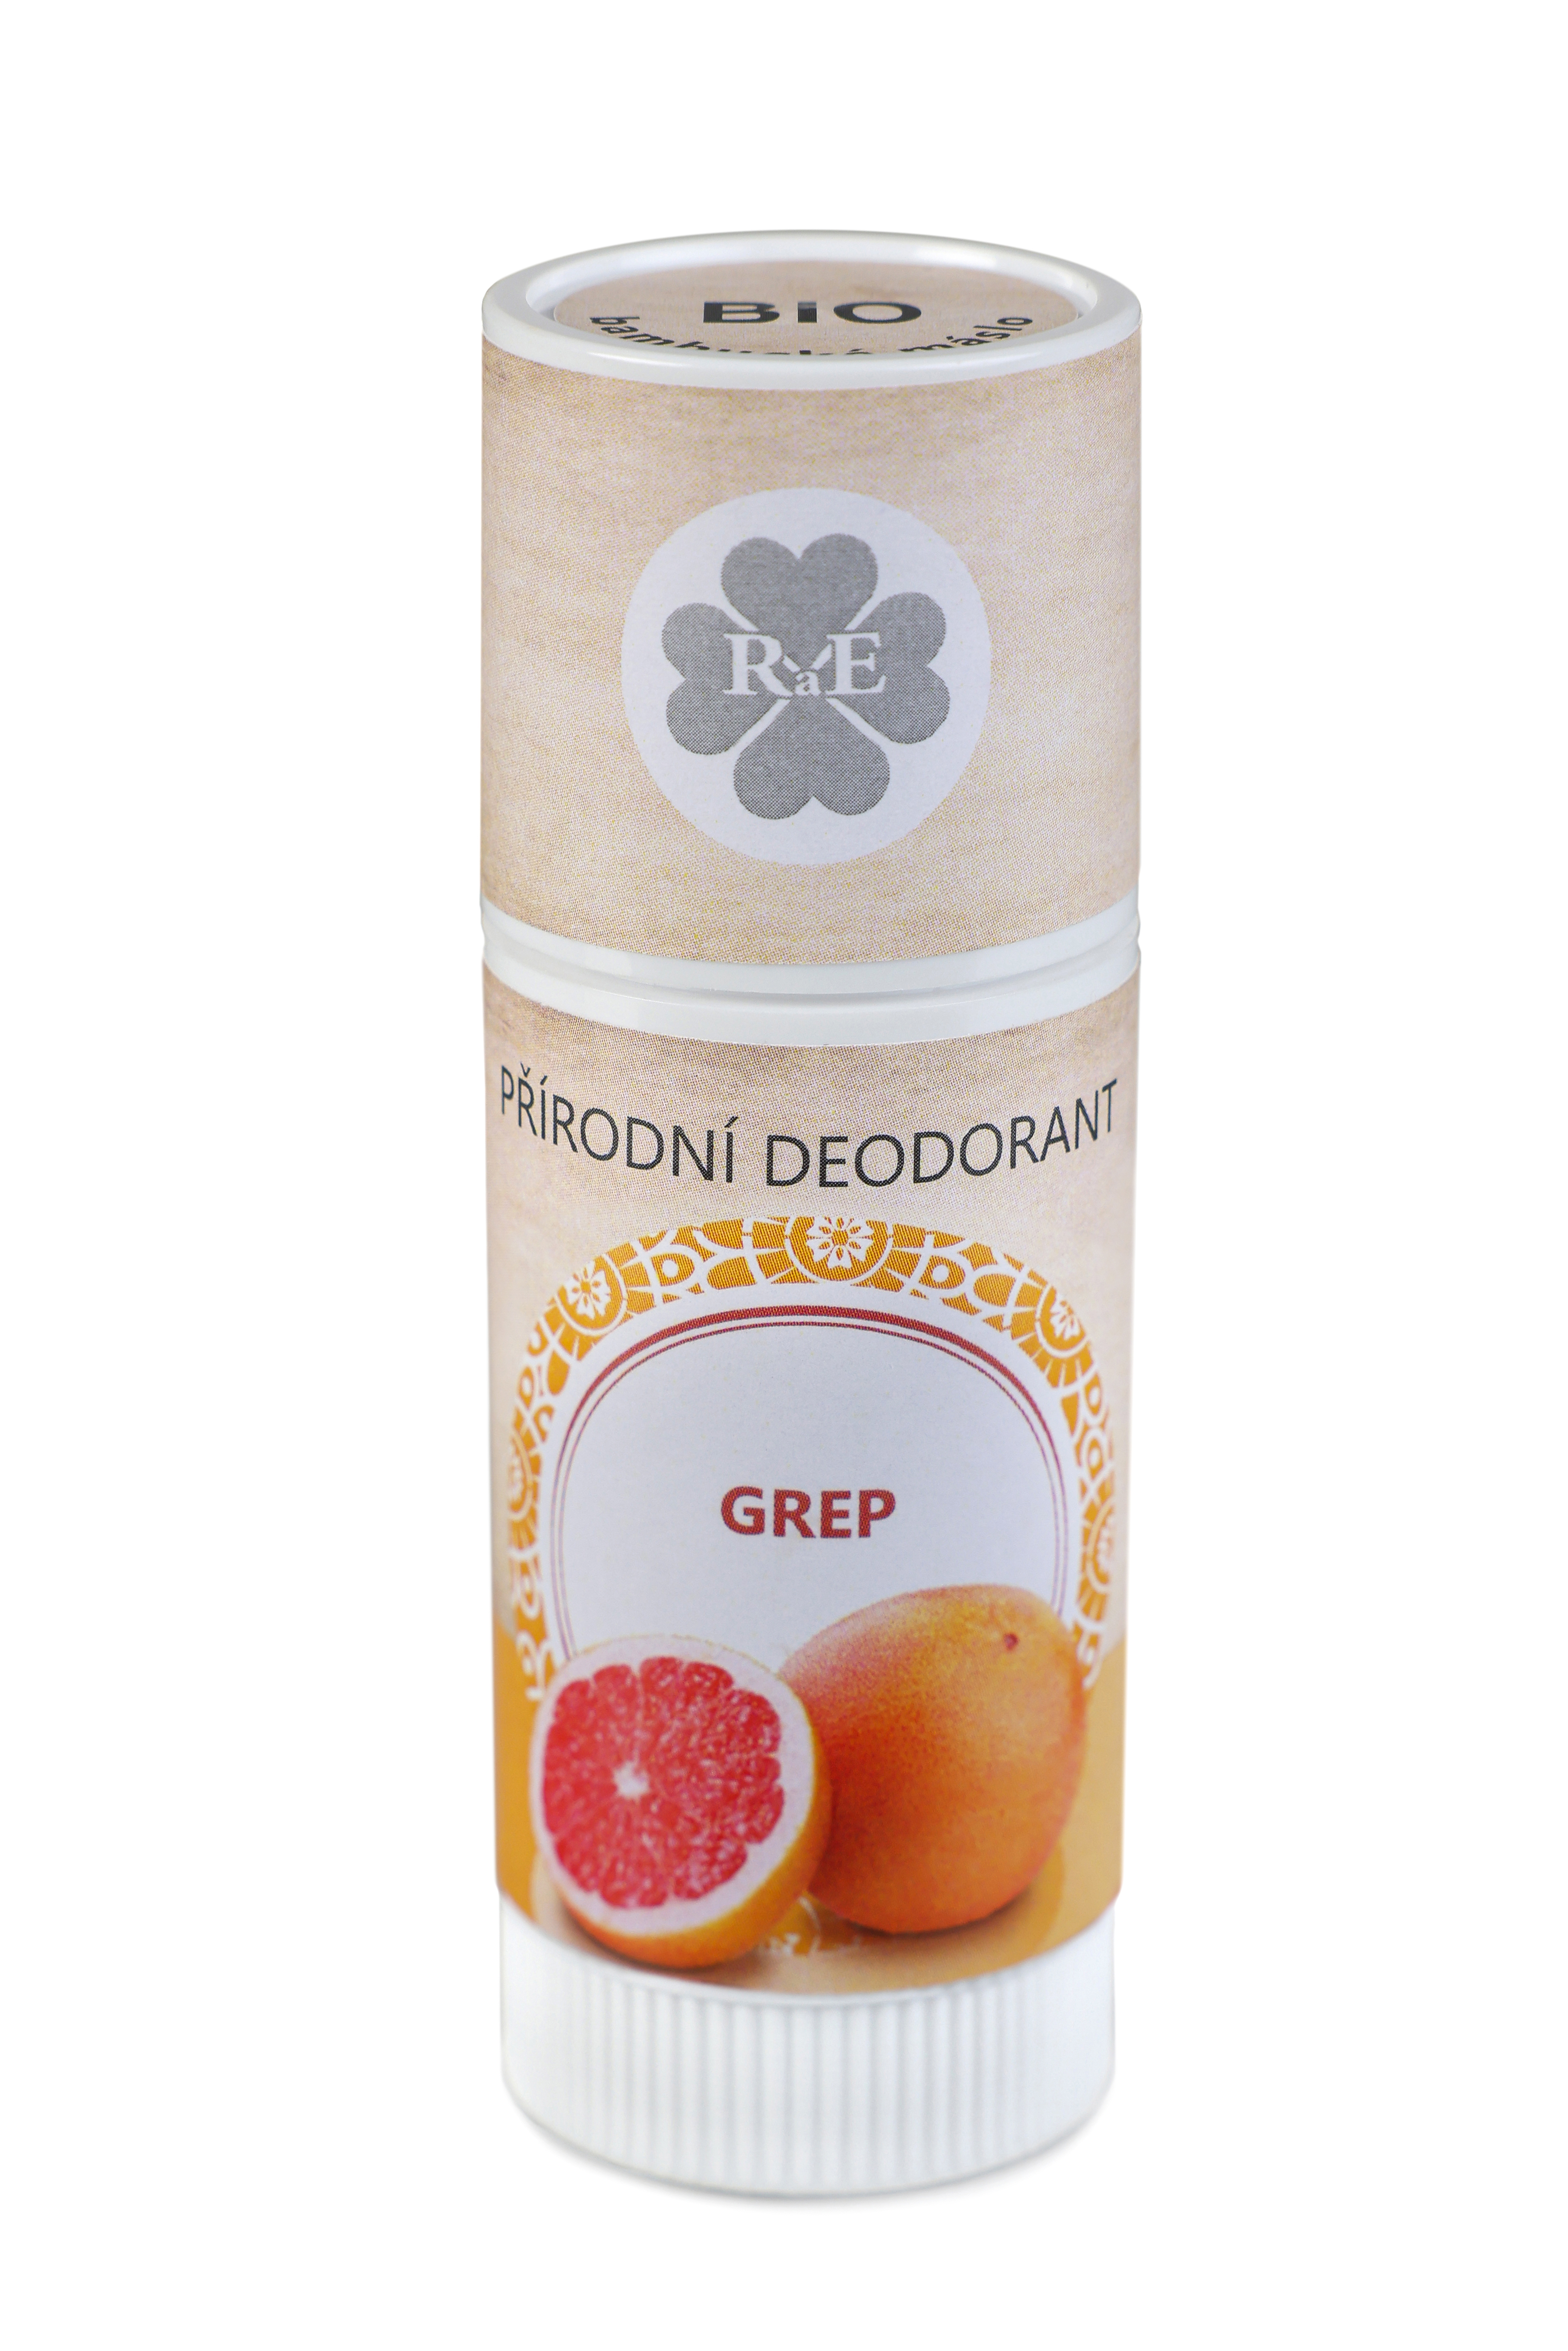 Přírodní deodorant BIO bambucké máslo s vůní grepu 25 ml